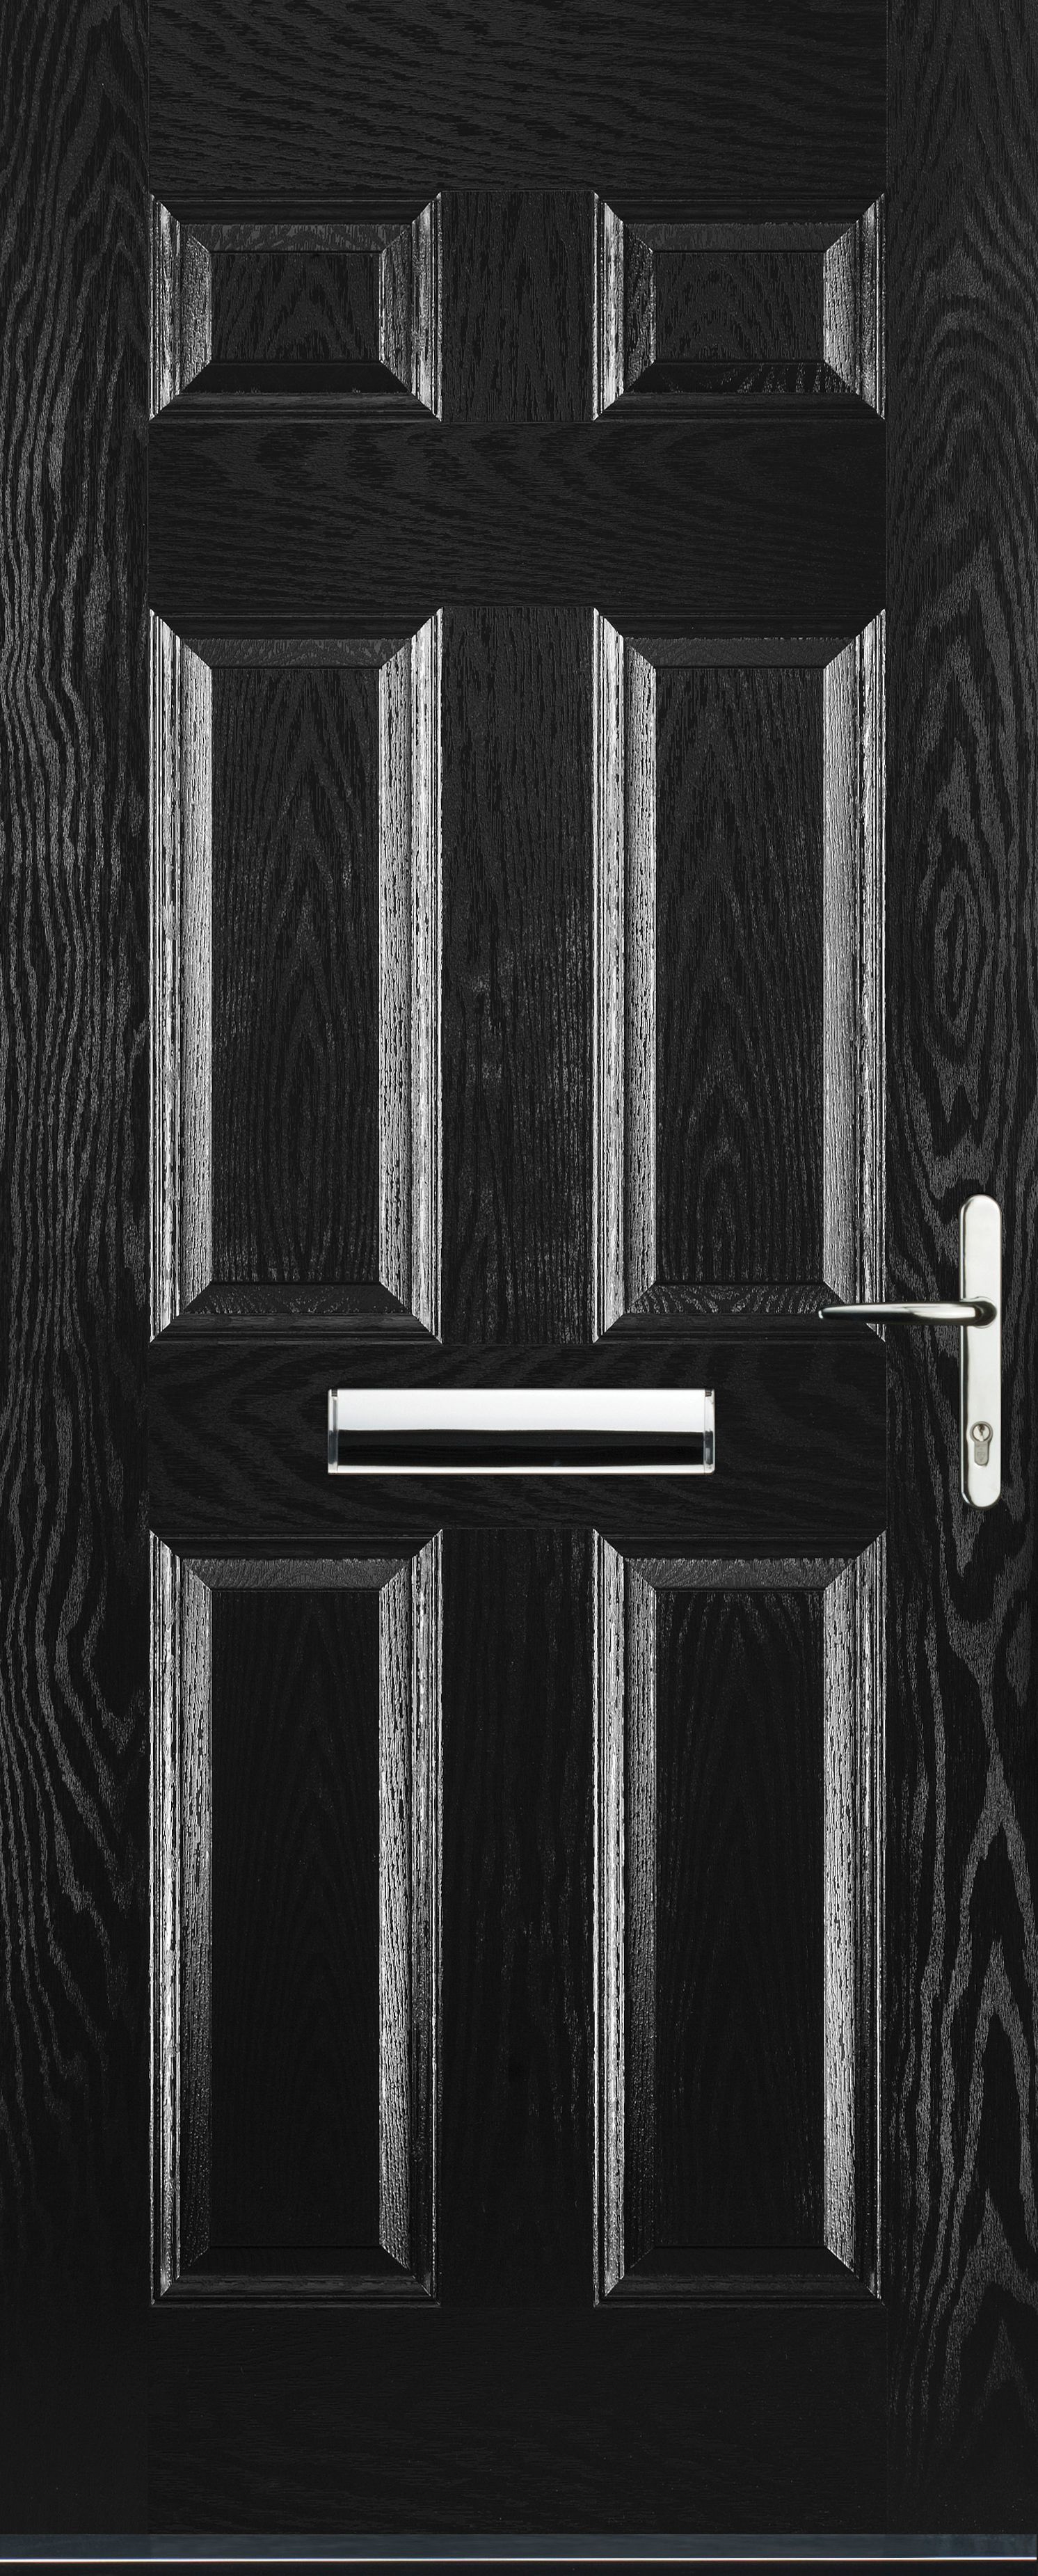 Image of Euramax 6 Panel Left Hand Black Composite Door - 880 x 2100mm